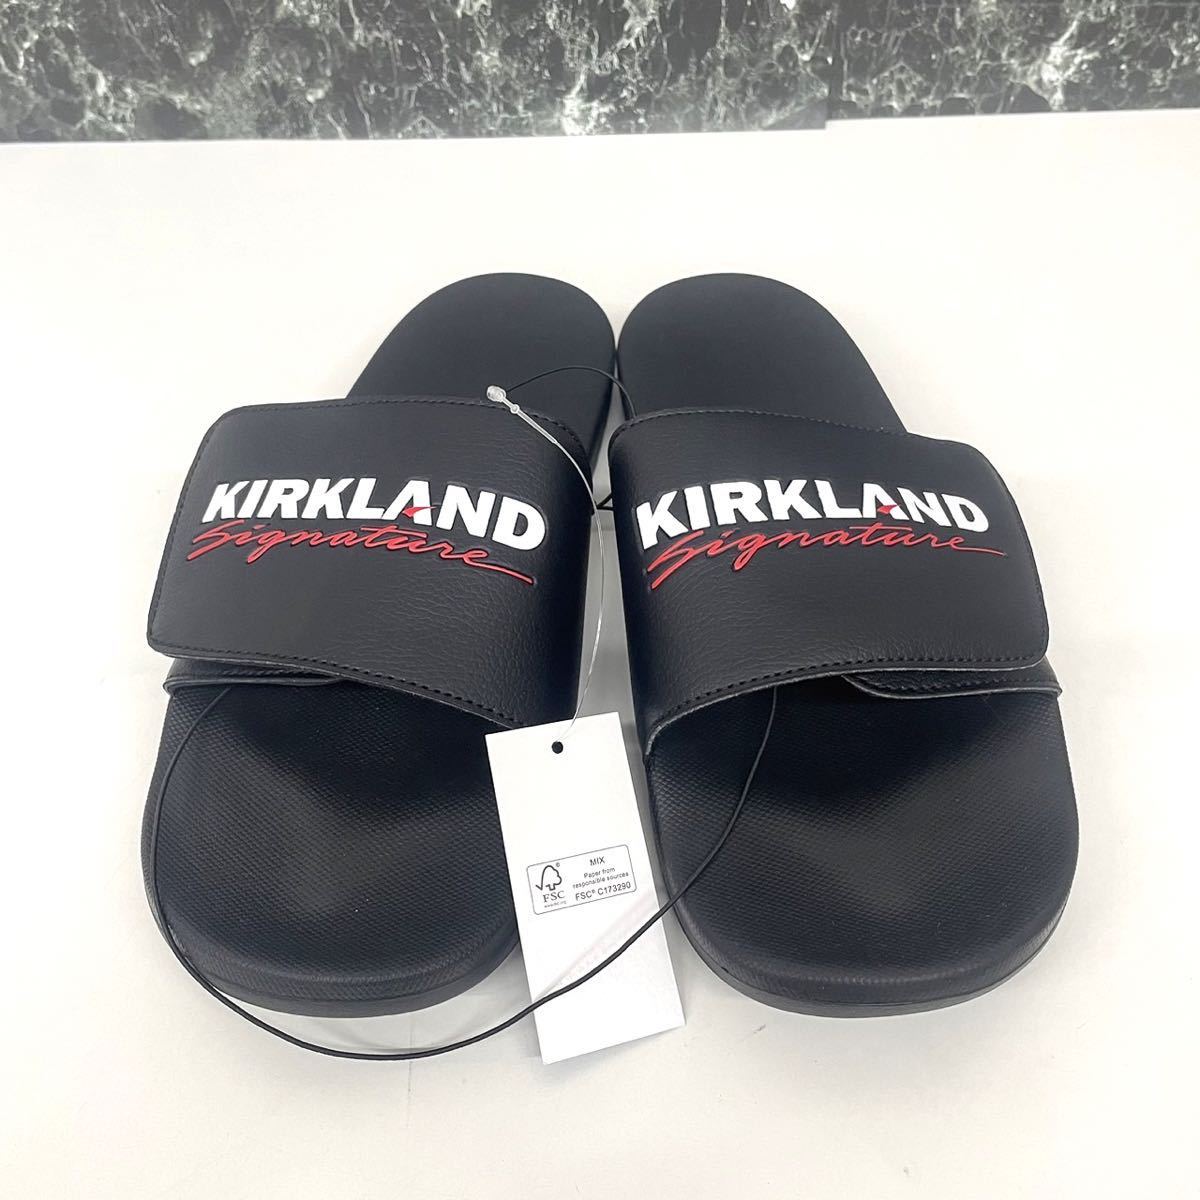  новый товар #KS машина Clan doKIRKLAND мужской Logo сандалии US9 27cm чёрный черный тапочки 